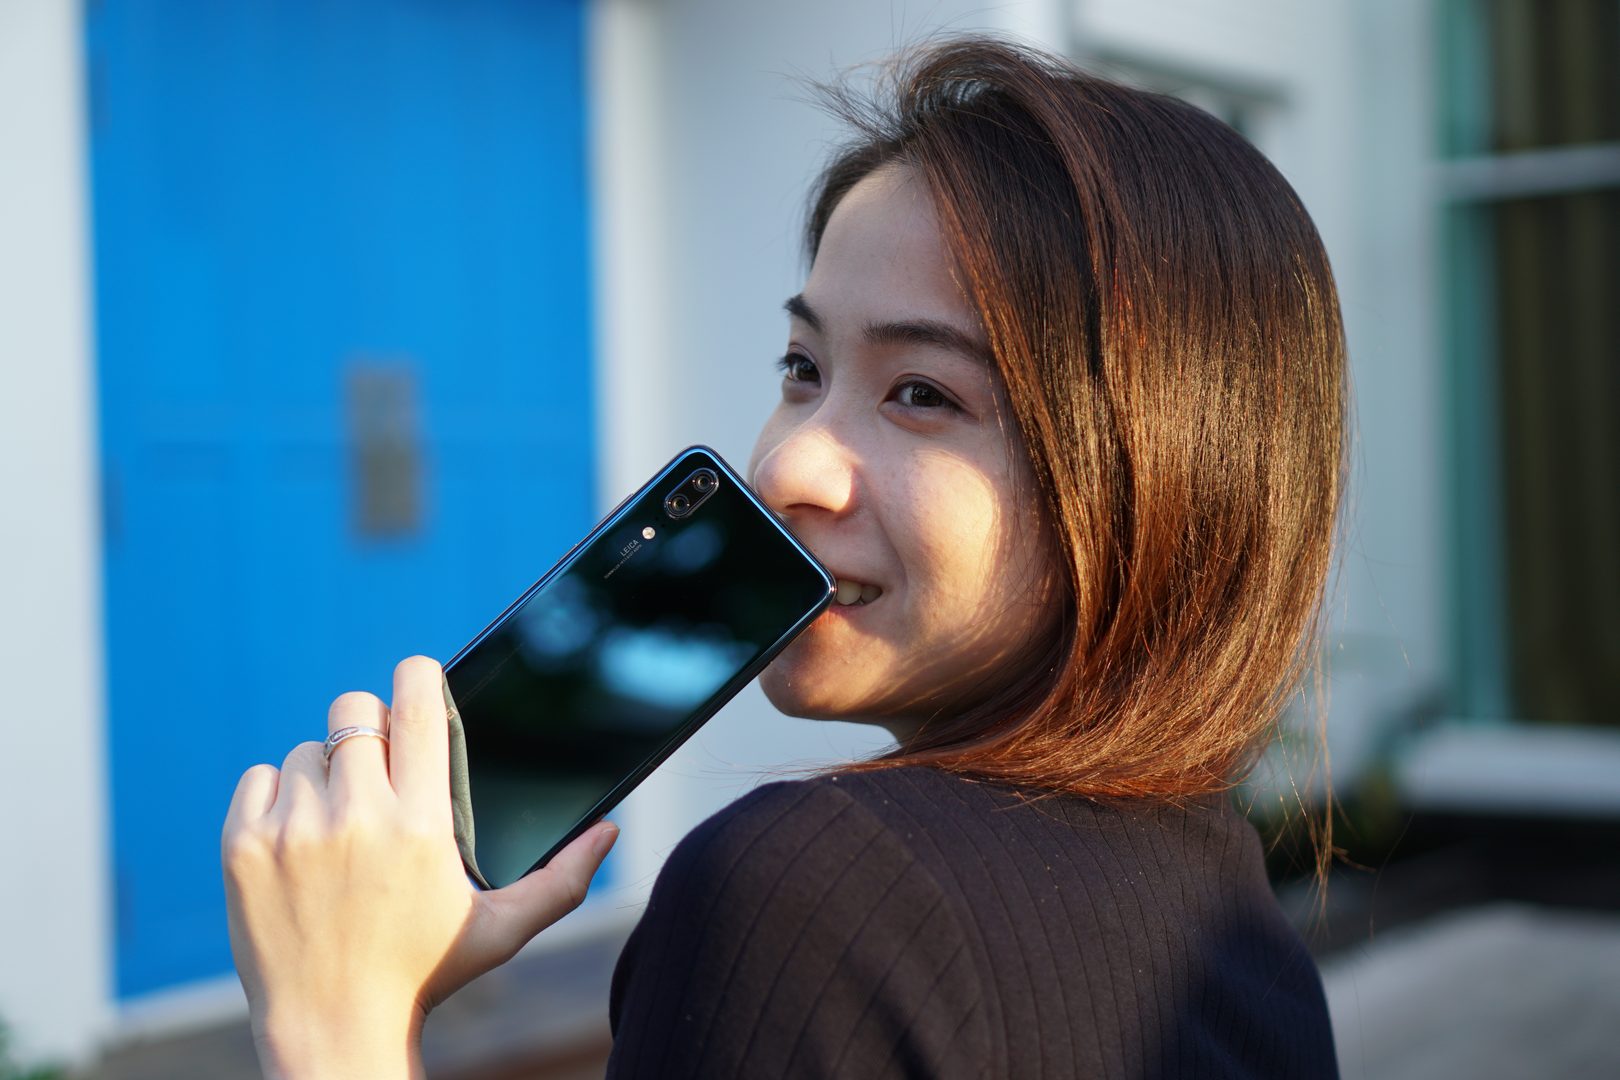 รีวิว Huawei P20 สมาร์ทโฟนเก่งรอบด้านในราคาคุ้มๆ